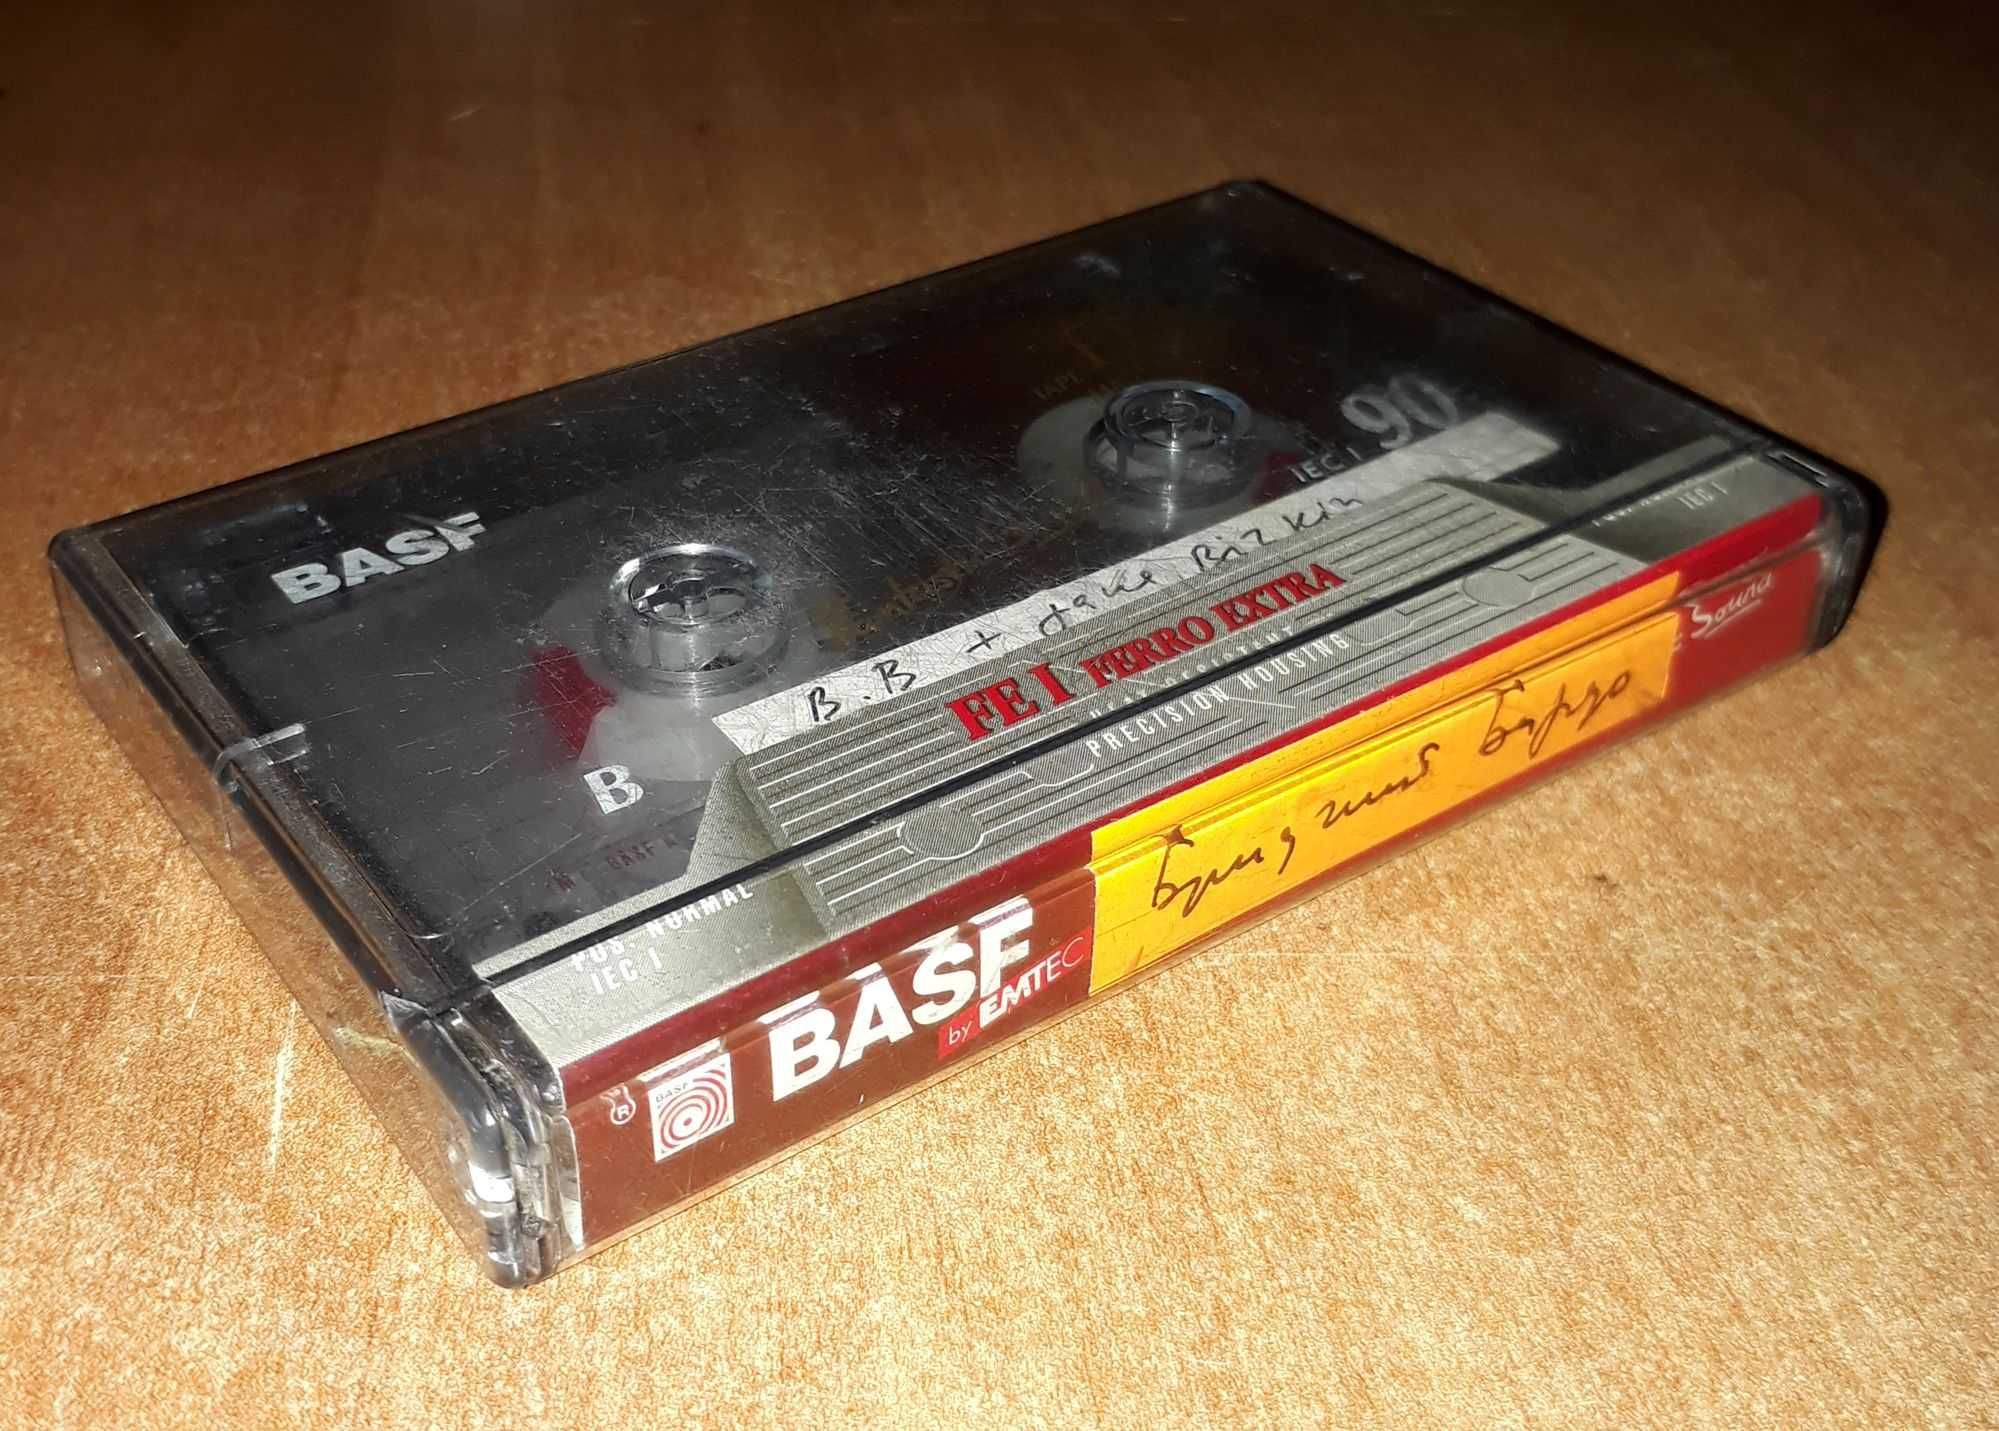 Аудио-кассета BASF Брижит Бардо французская эстрада 70-е